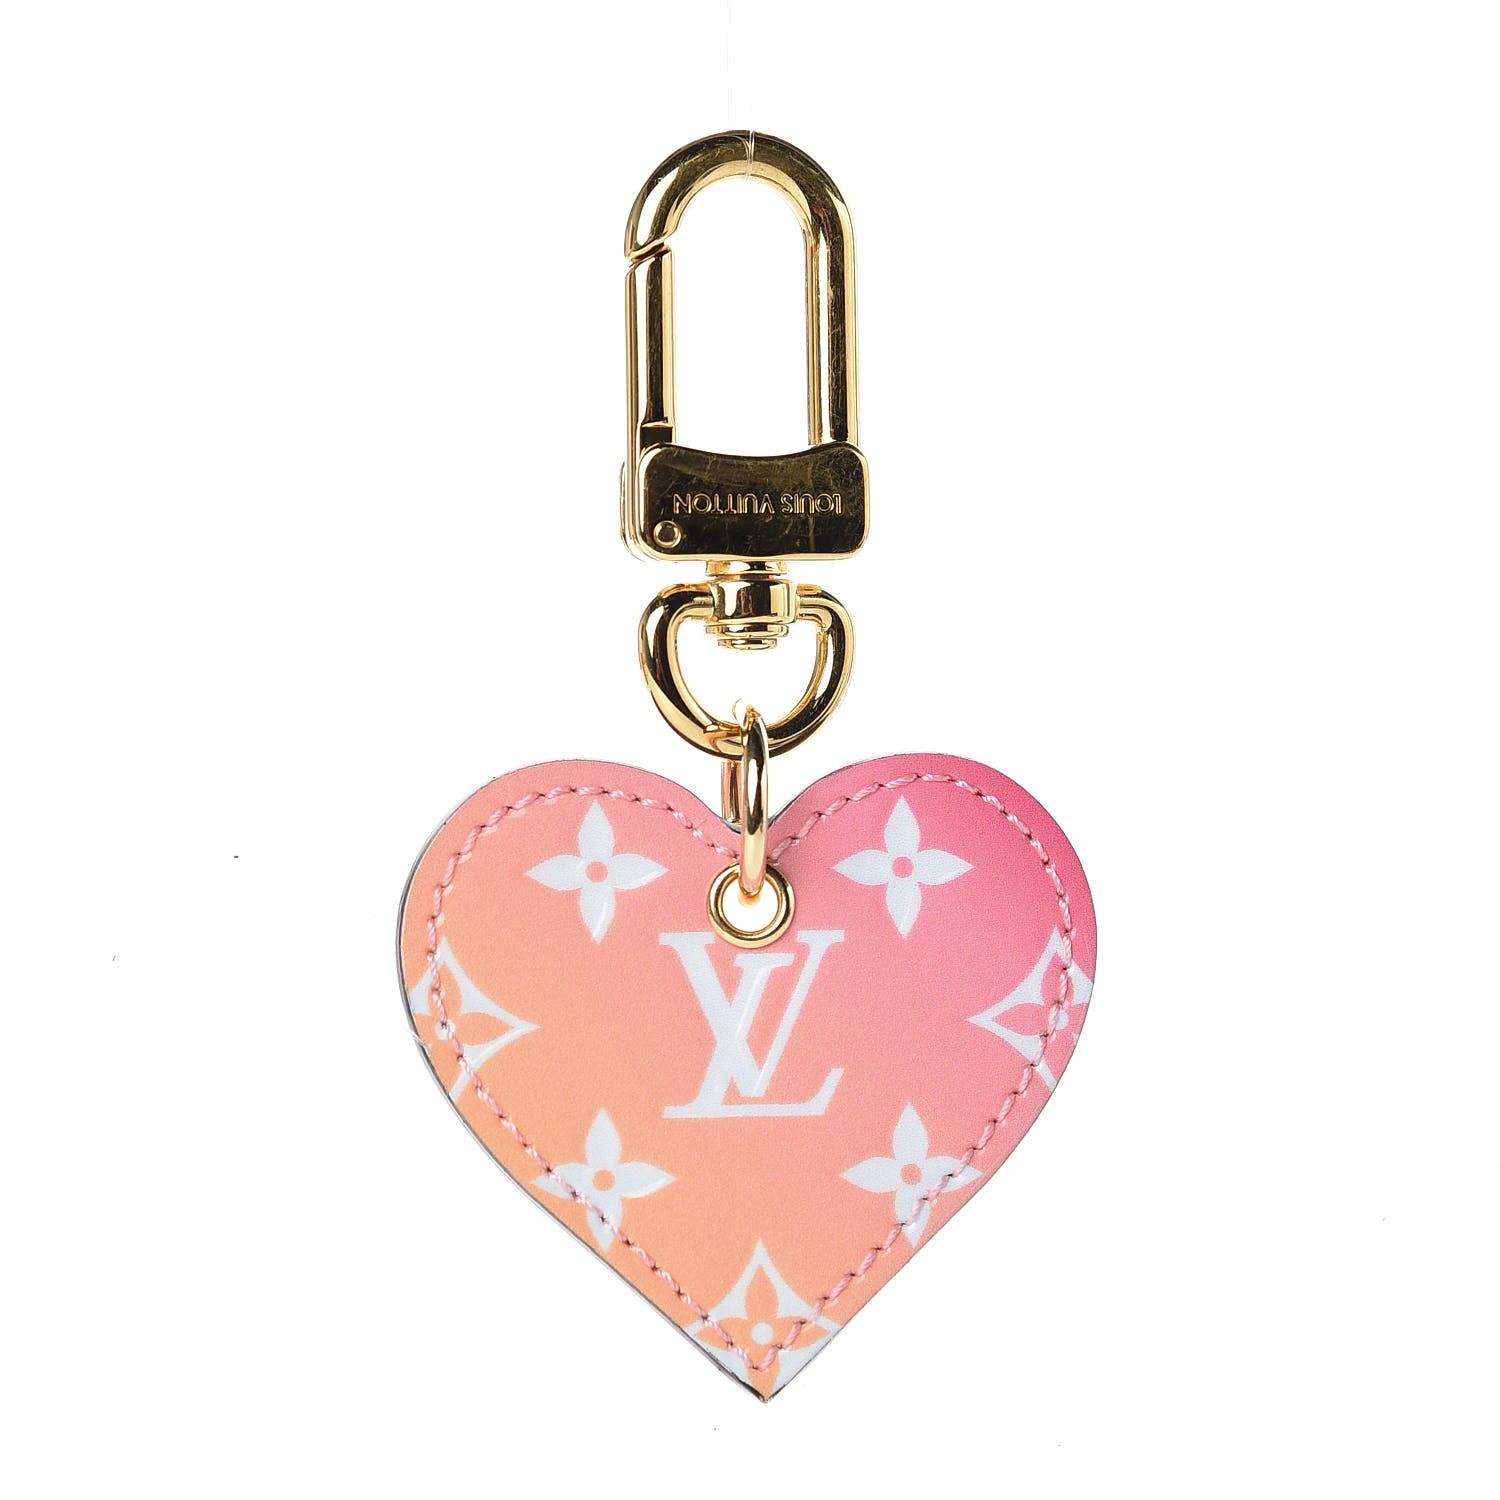 LOUIS VUITTON Vernis Degrade Love Lock Heart Key Holder Bag Charm Pink White 413082